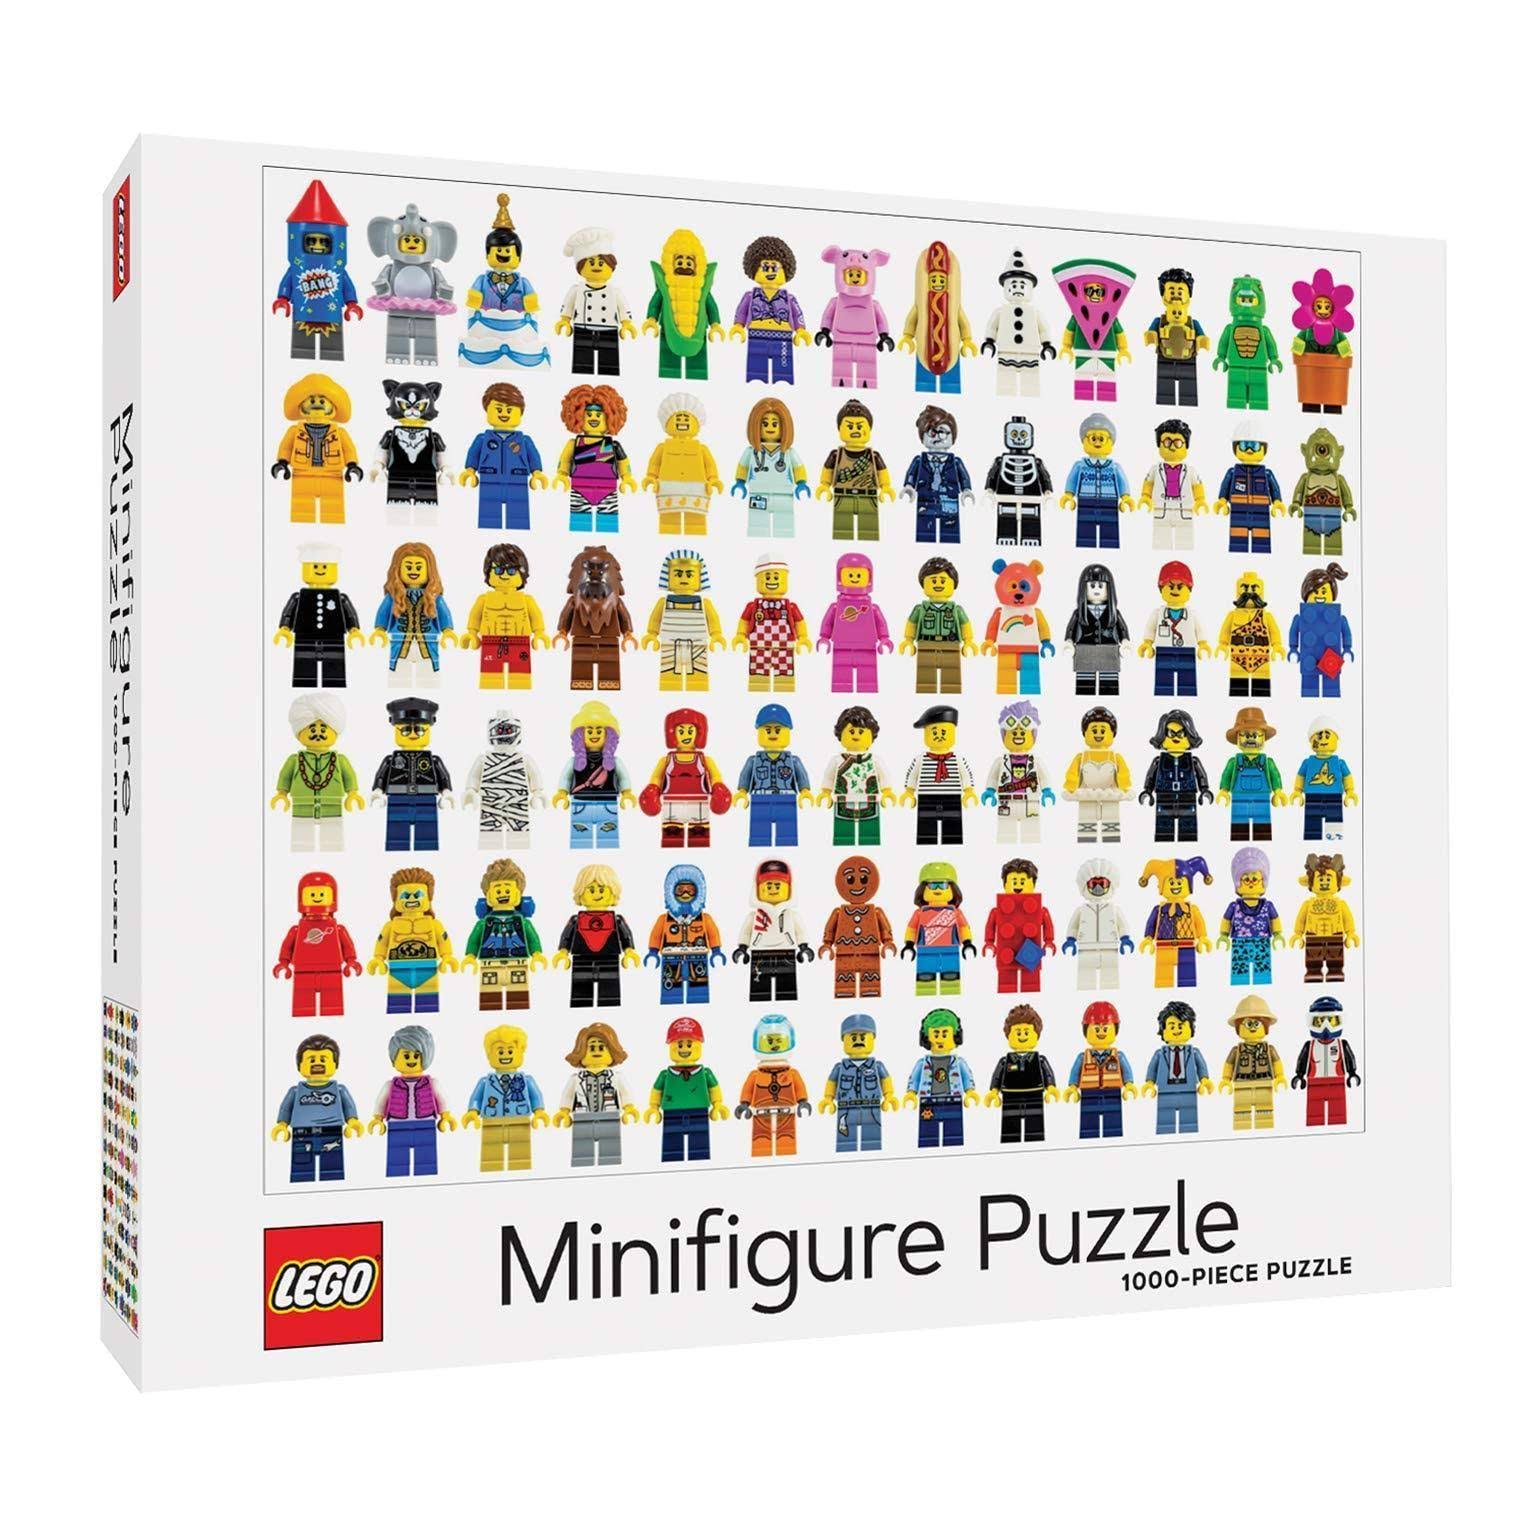 LEGO Minifigure 1000-Piece Puzzle